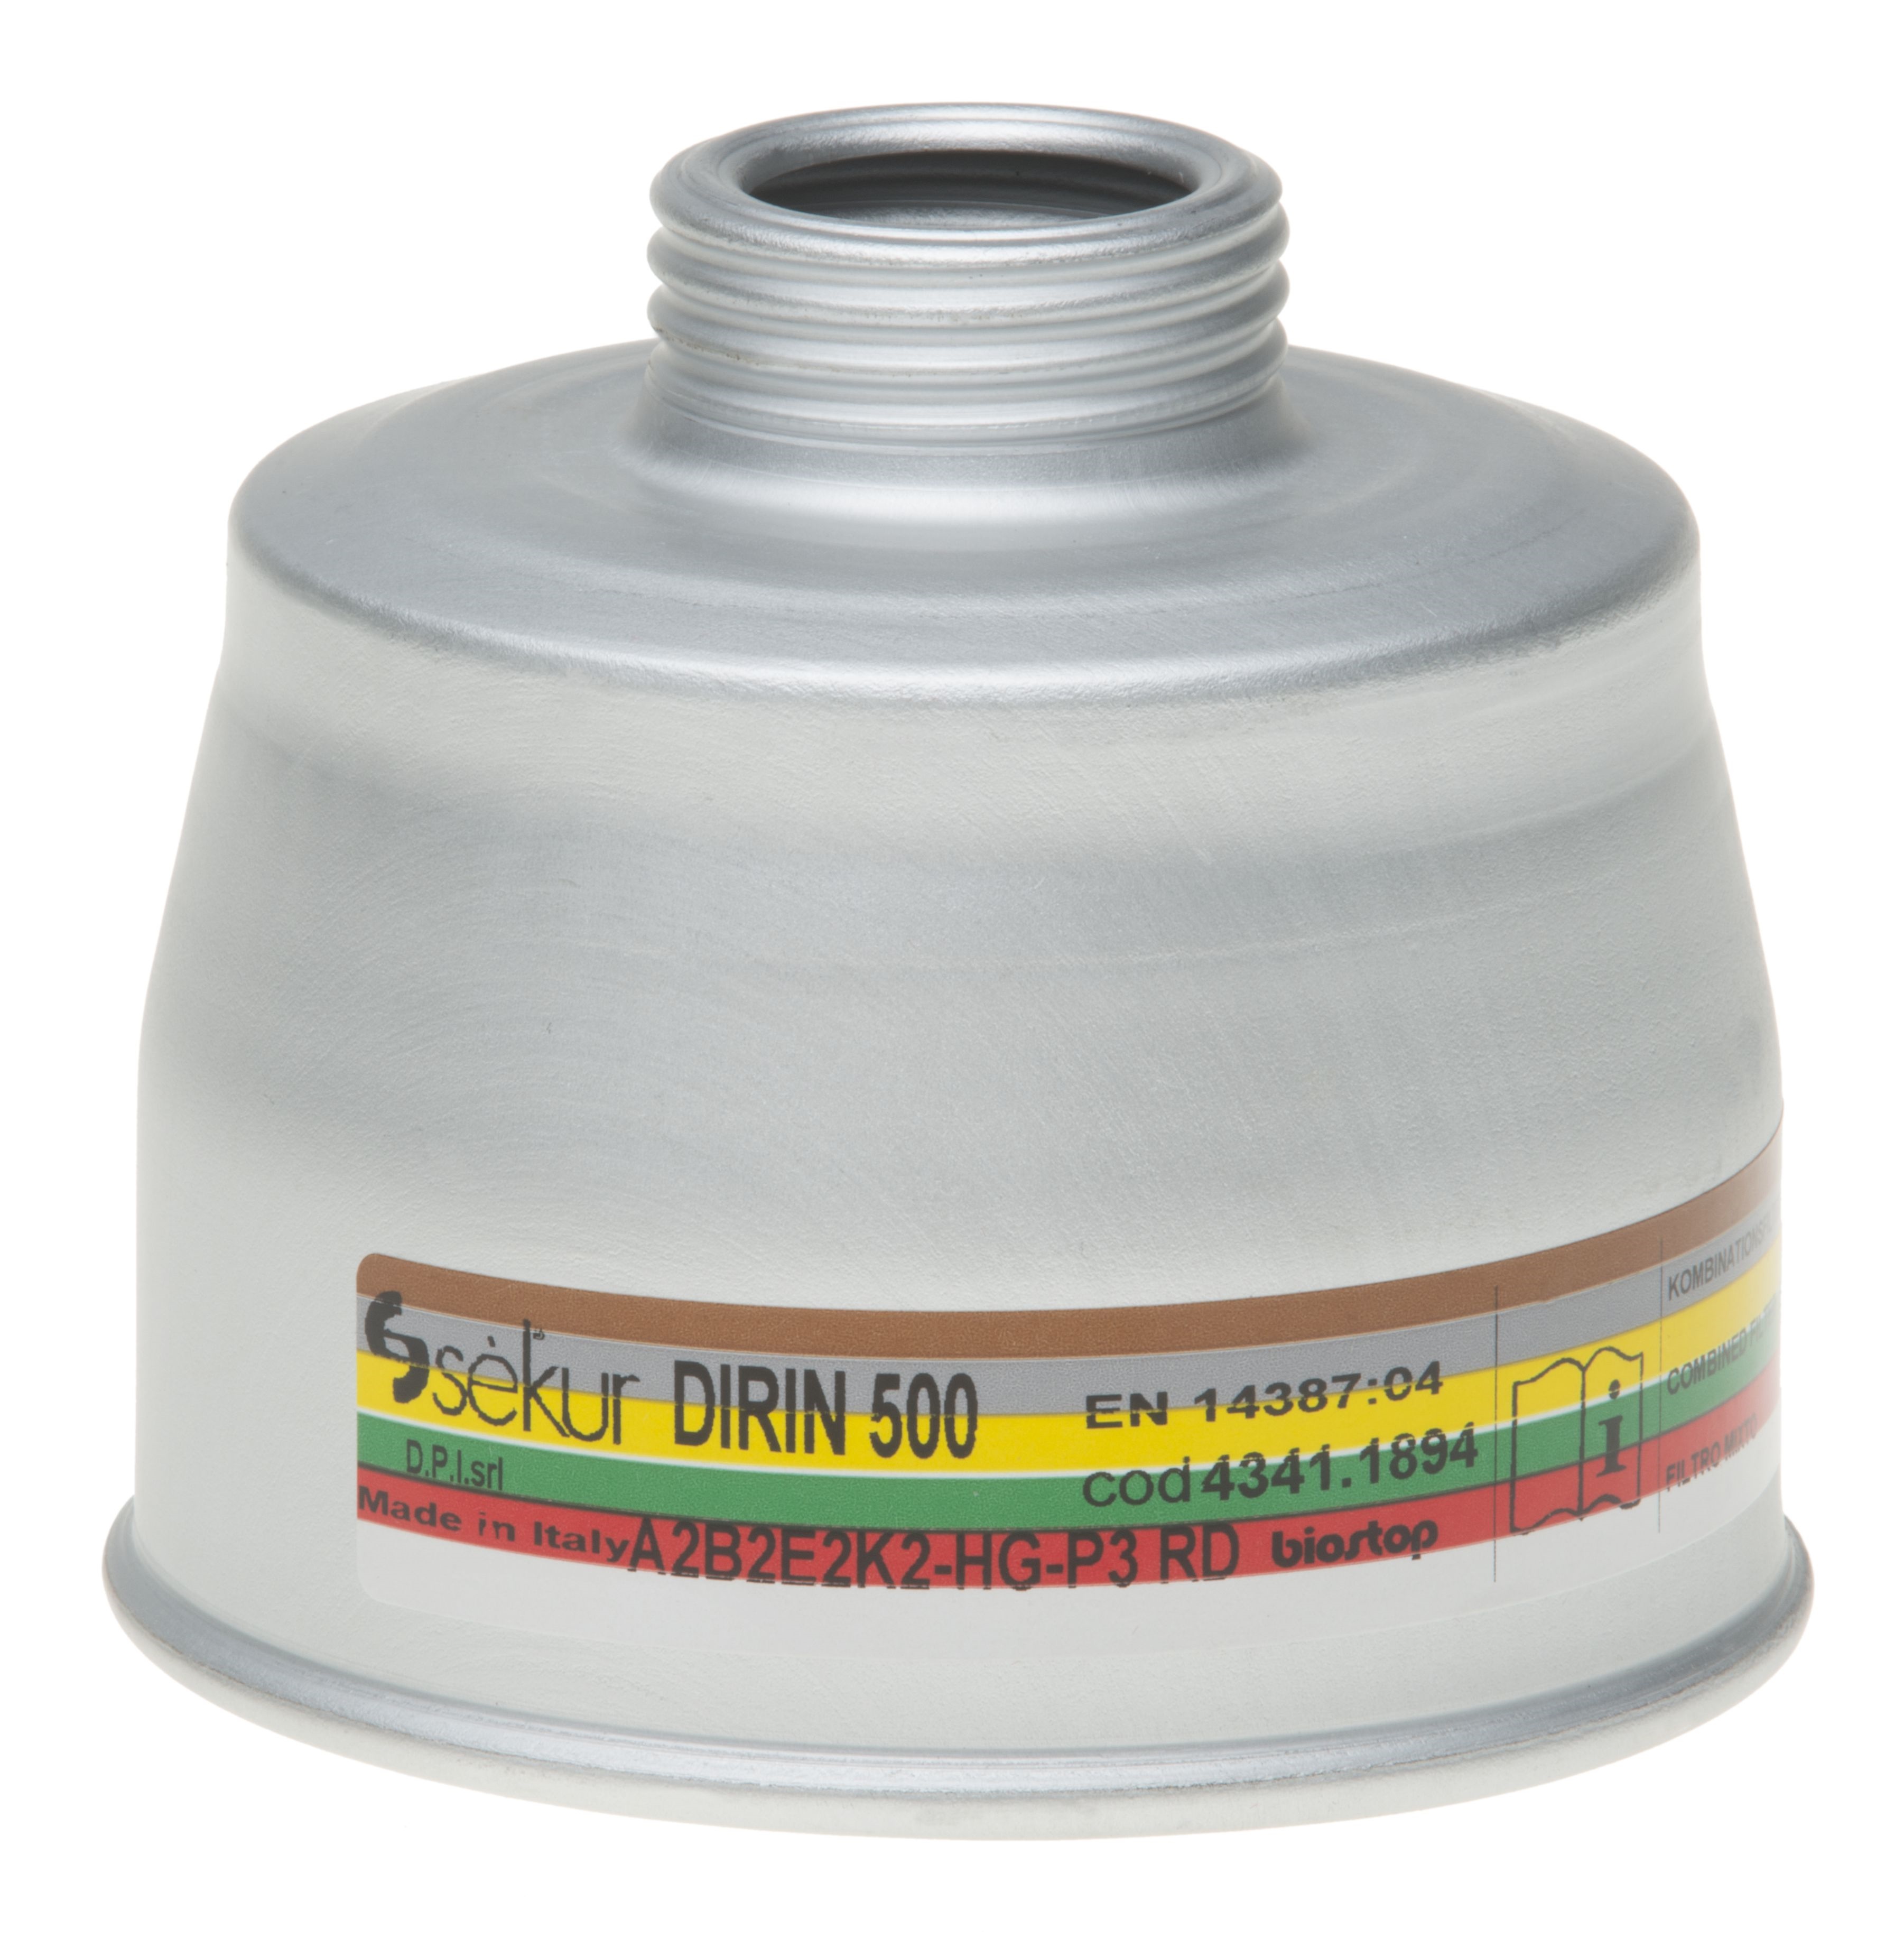 Mehrbereichs-Kombi-Filter DIRIN 500 A2 B2 E2 K2 - HG - P3R D